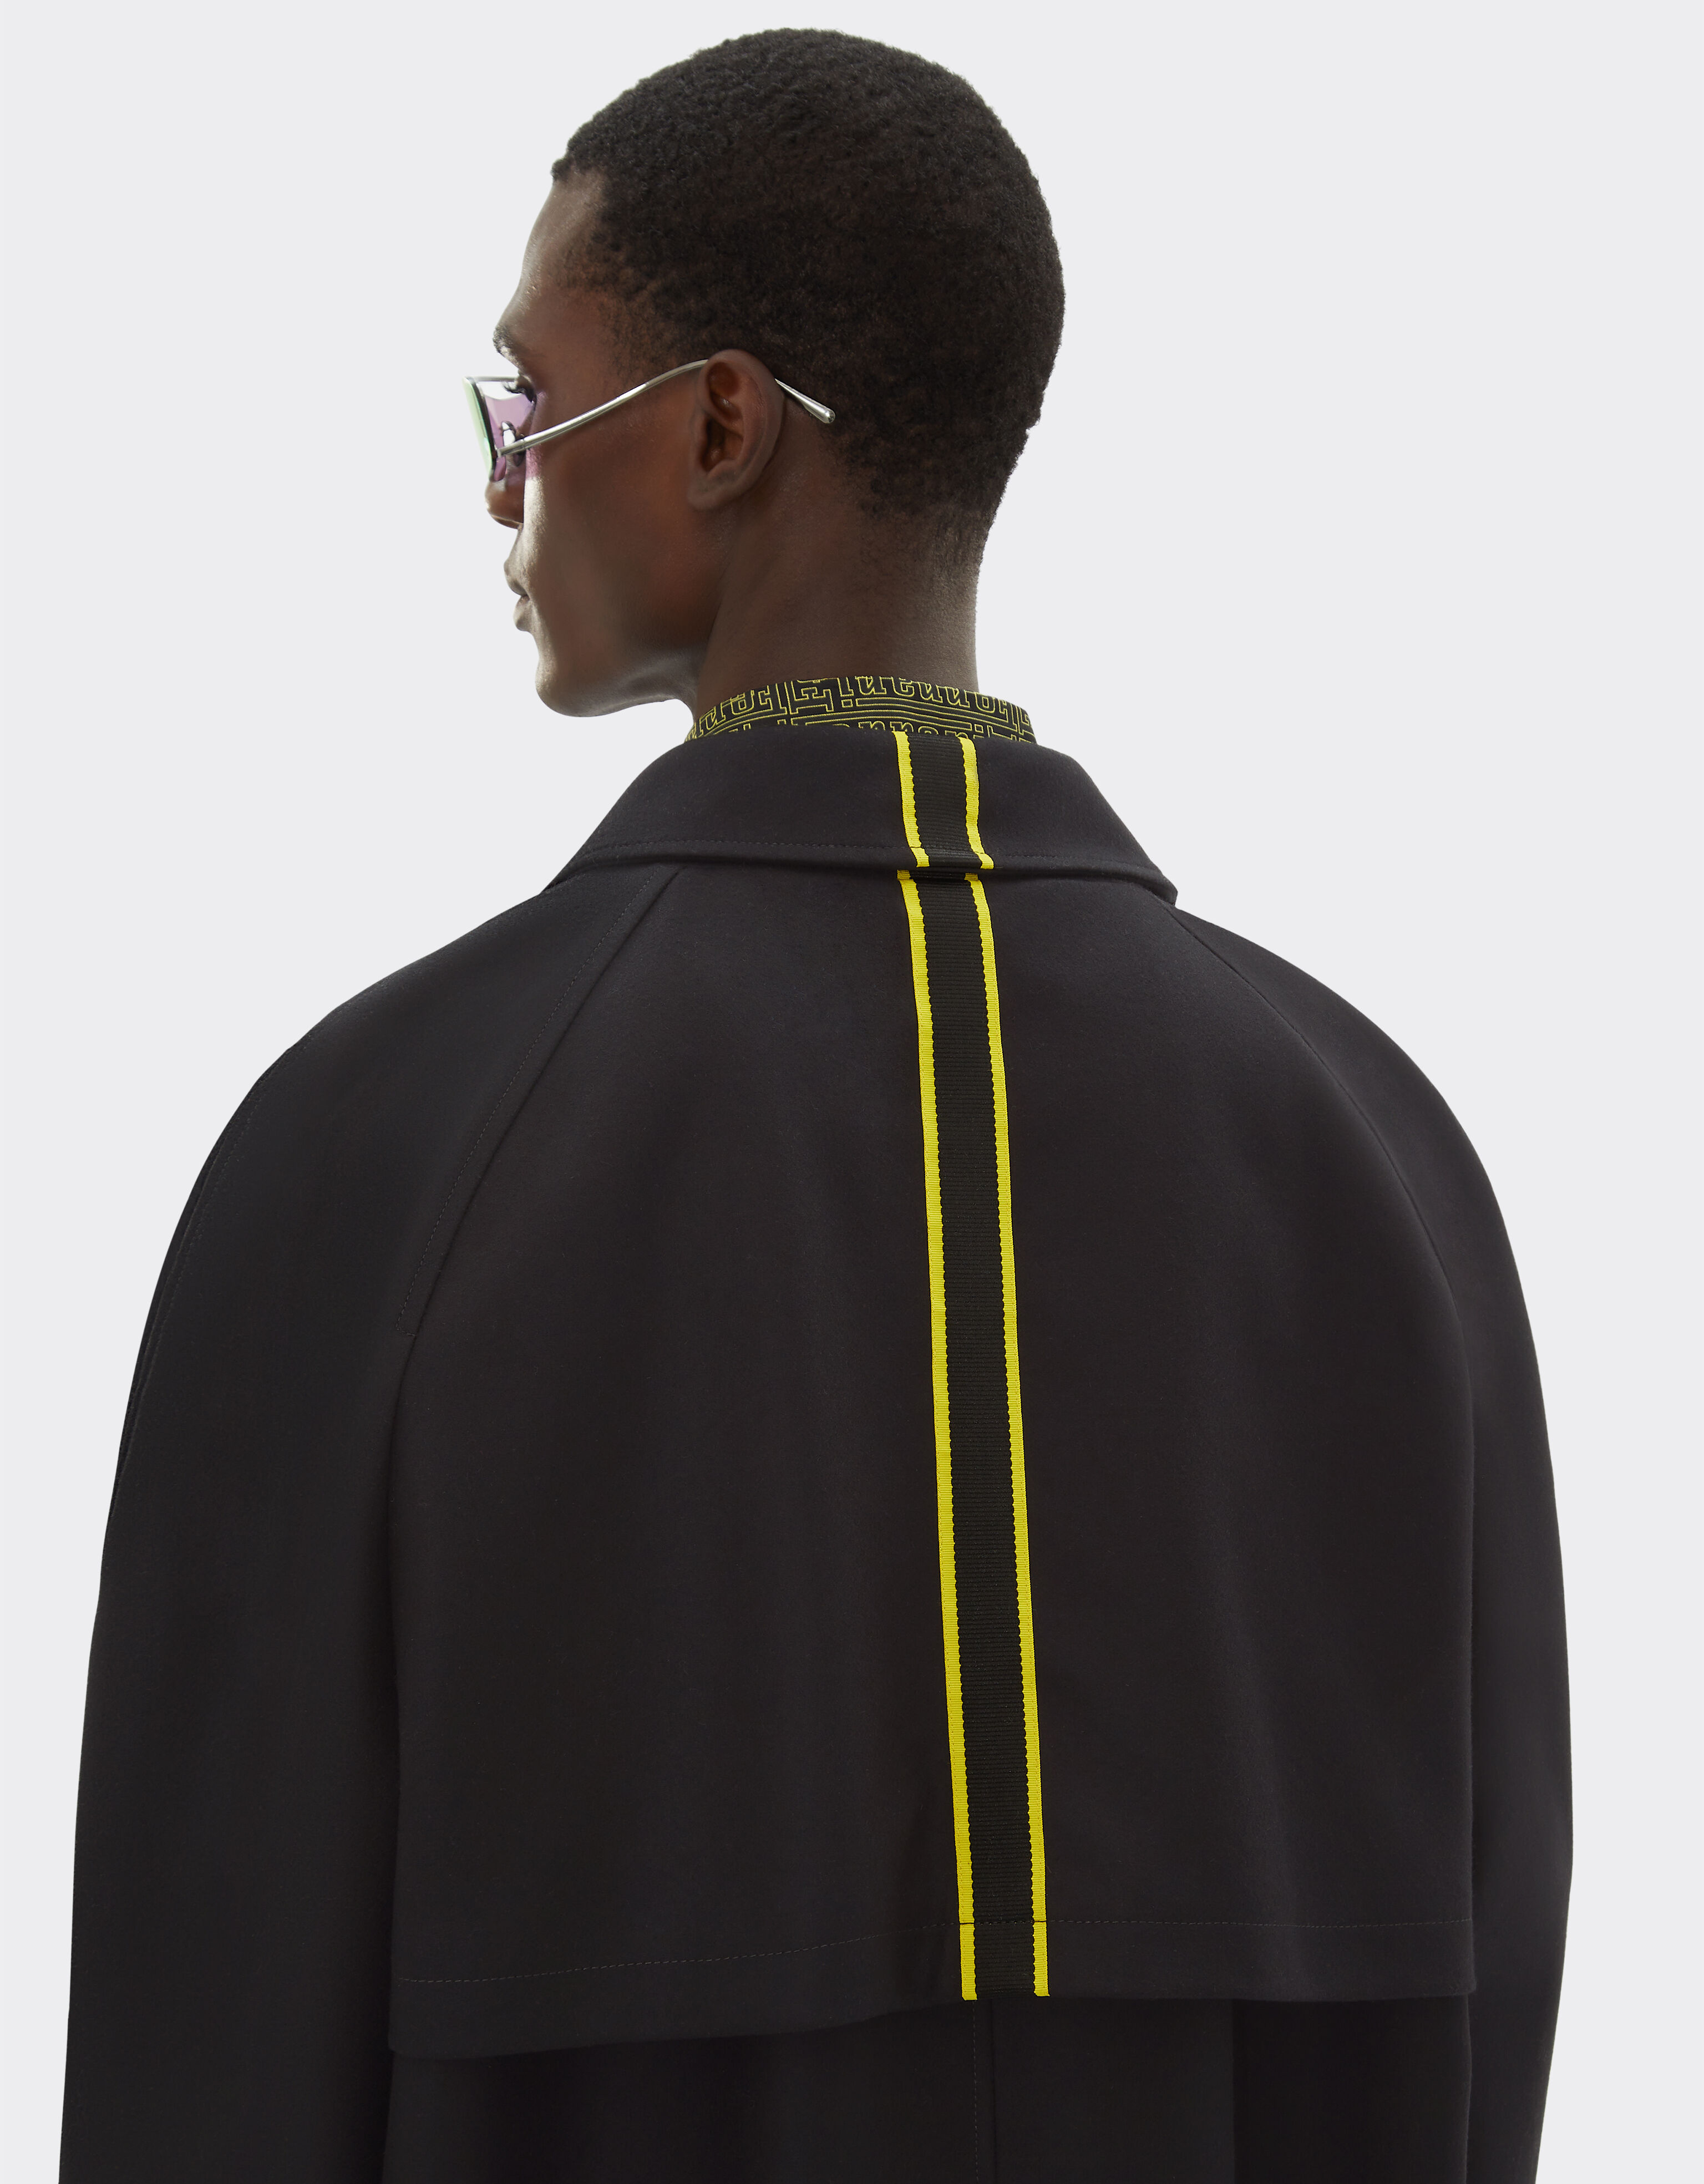 Ferrari Manteau imperméable en laine, nylon et cachemire Noir 20451f